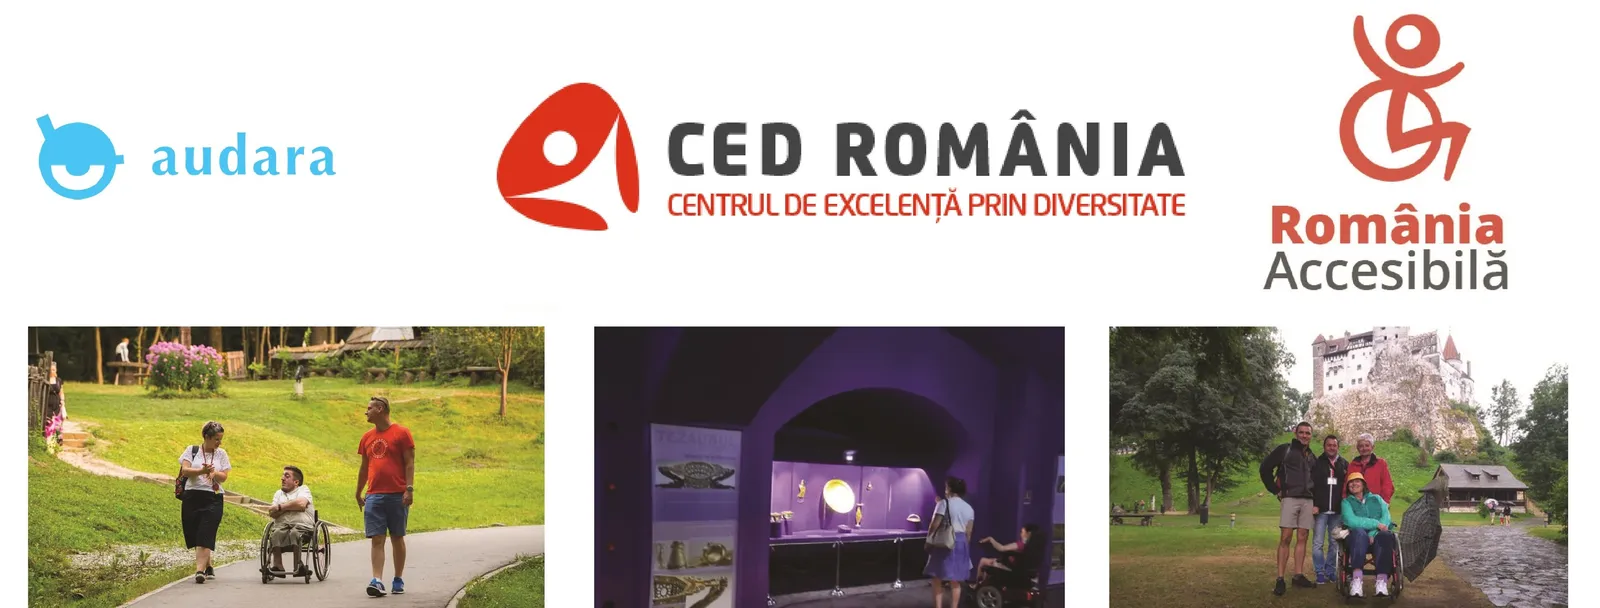 Asociația CED România Centrul de Excelență prin Diversitate